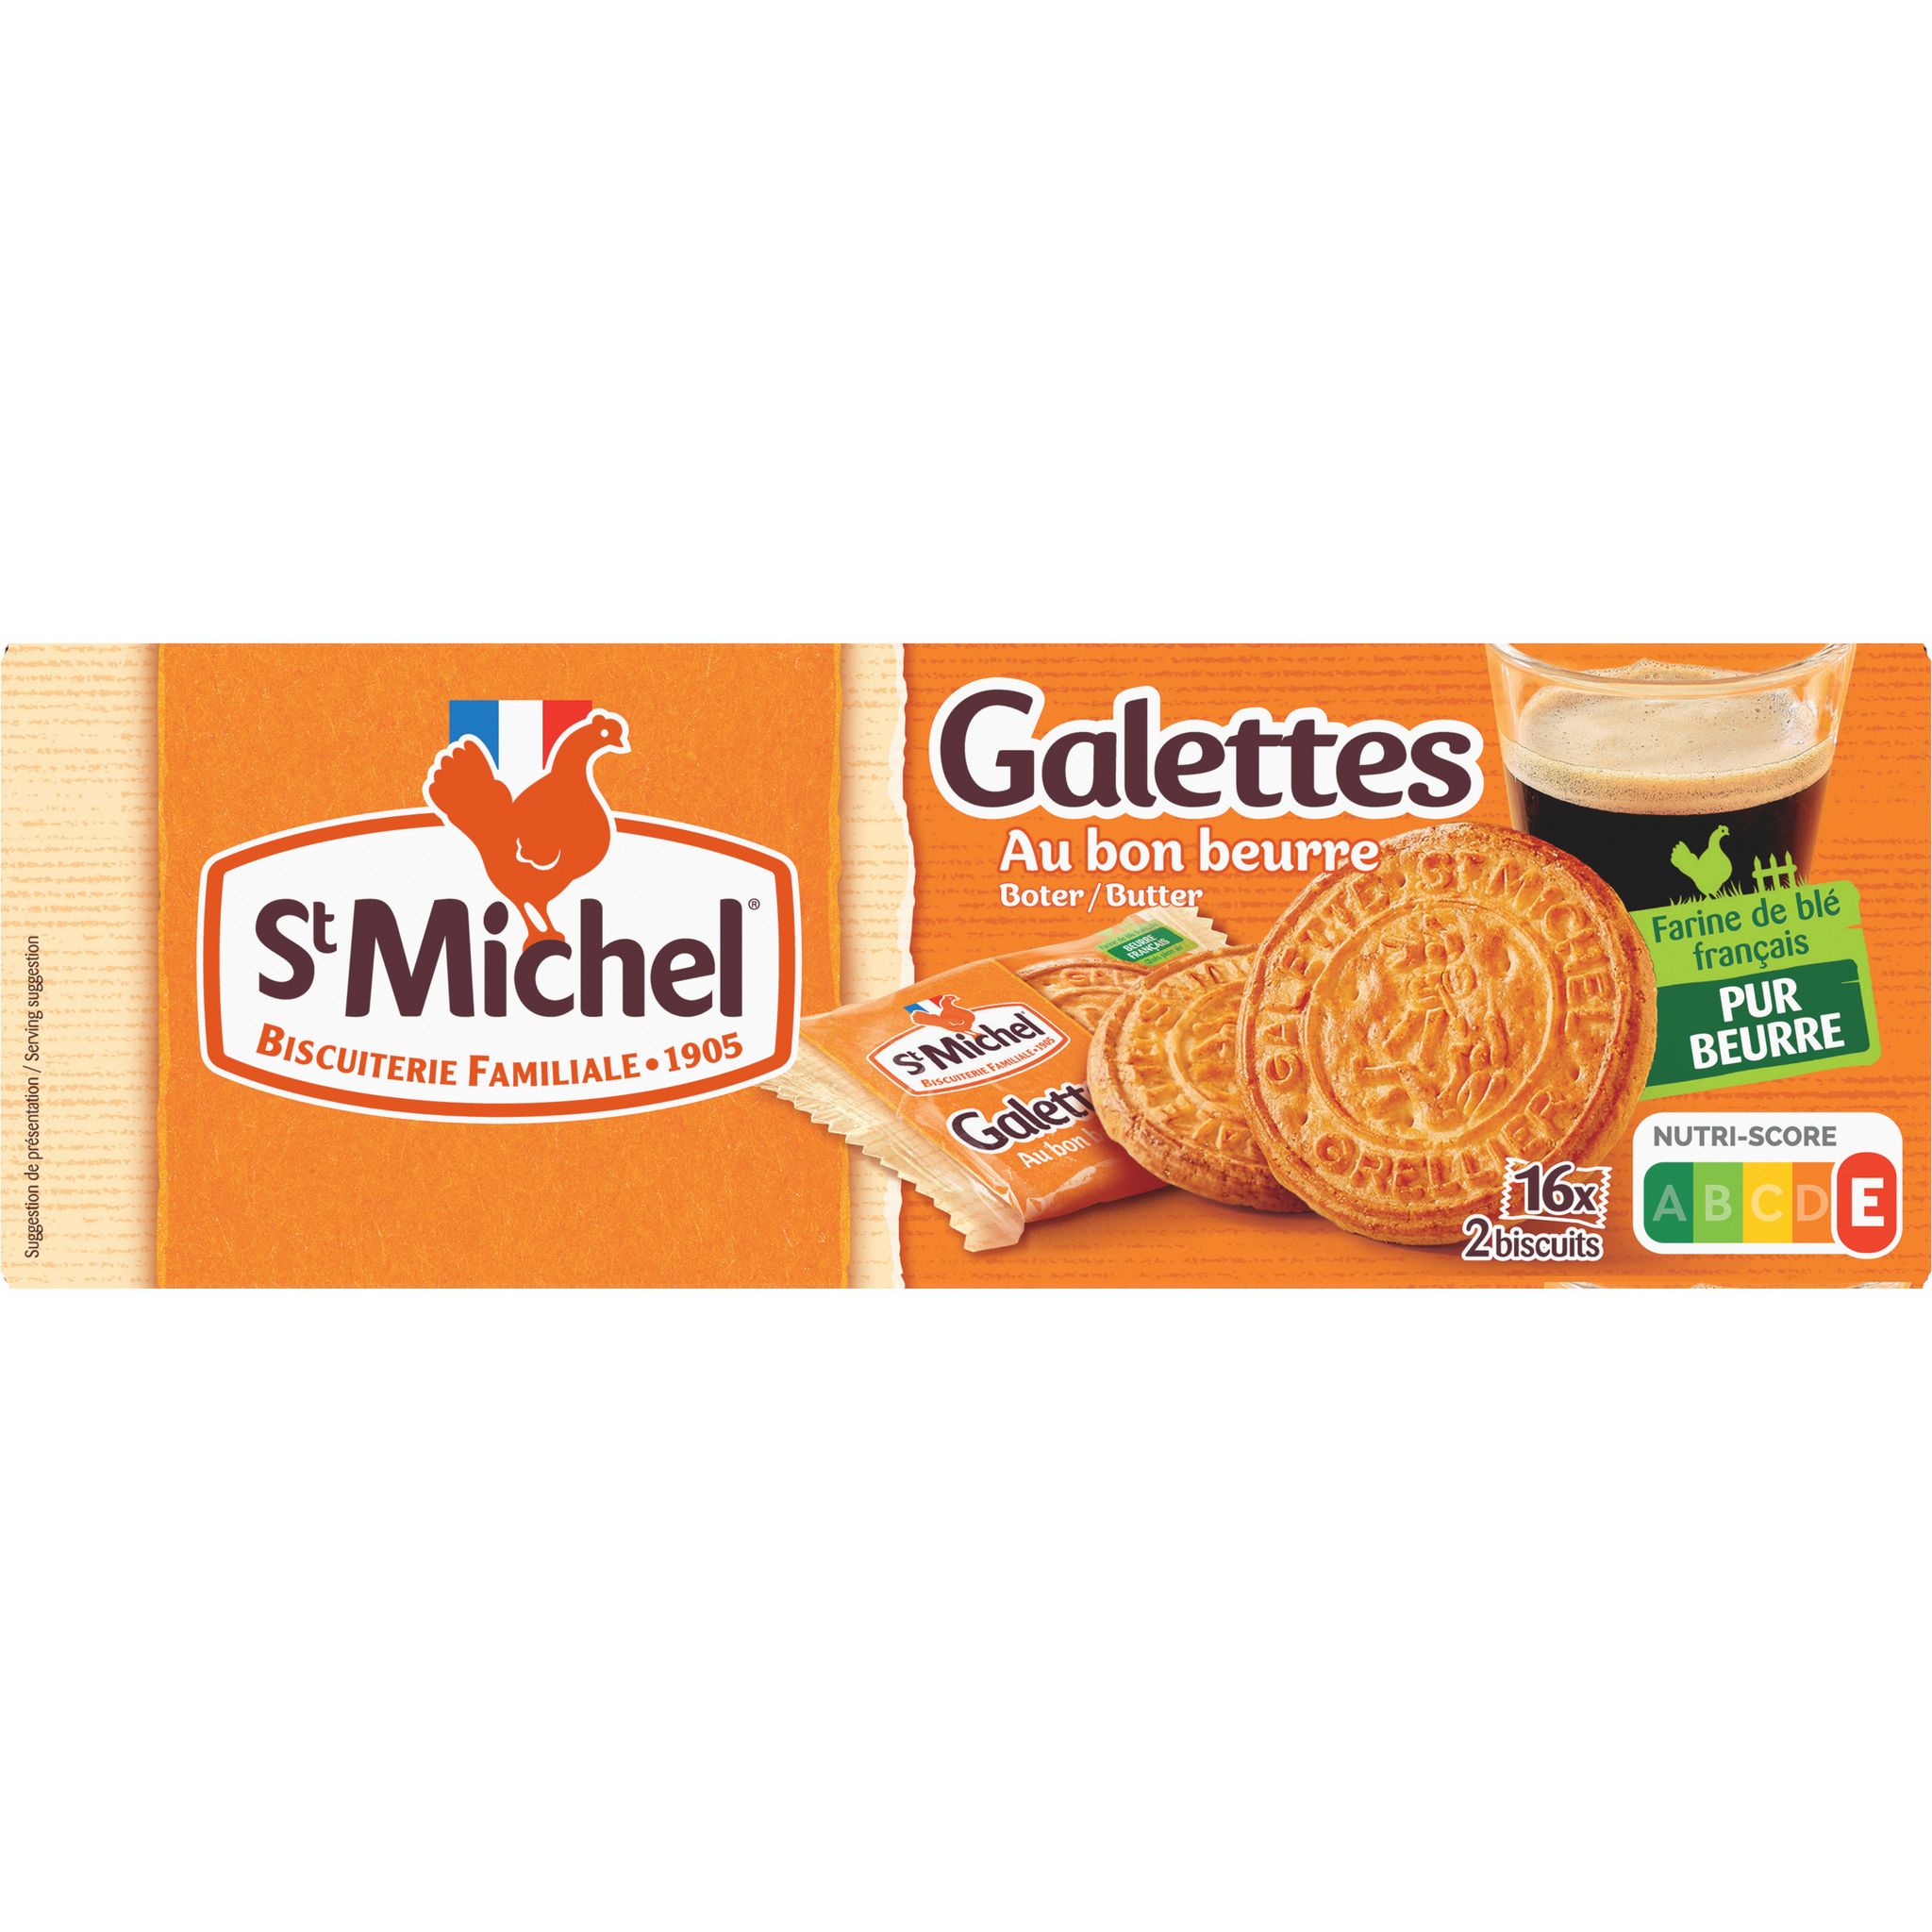 St Michel galettes au beurre 520g 